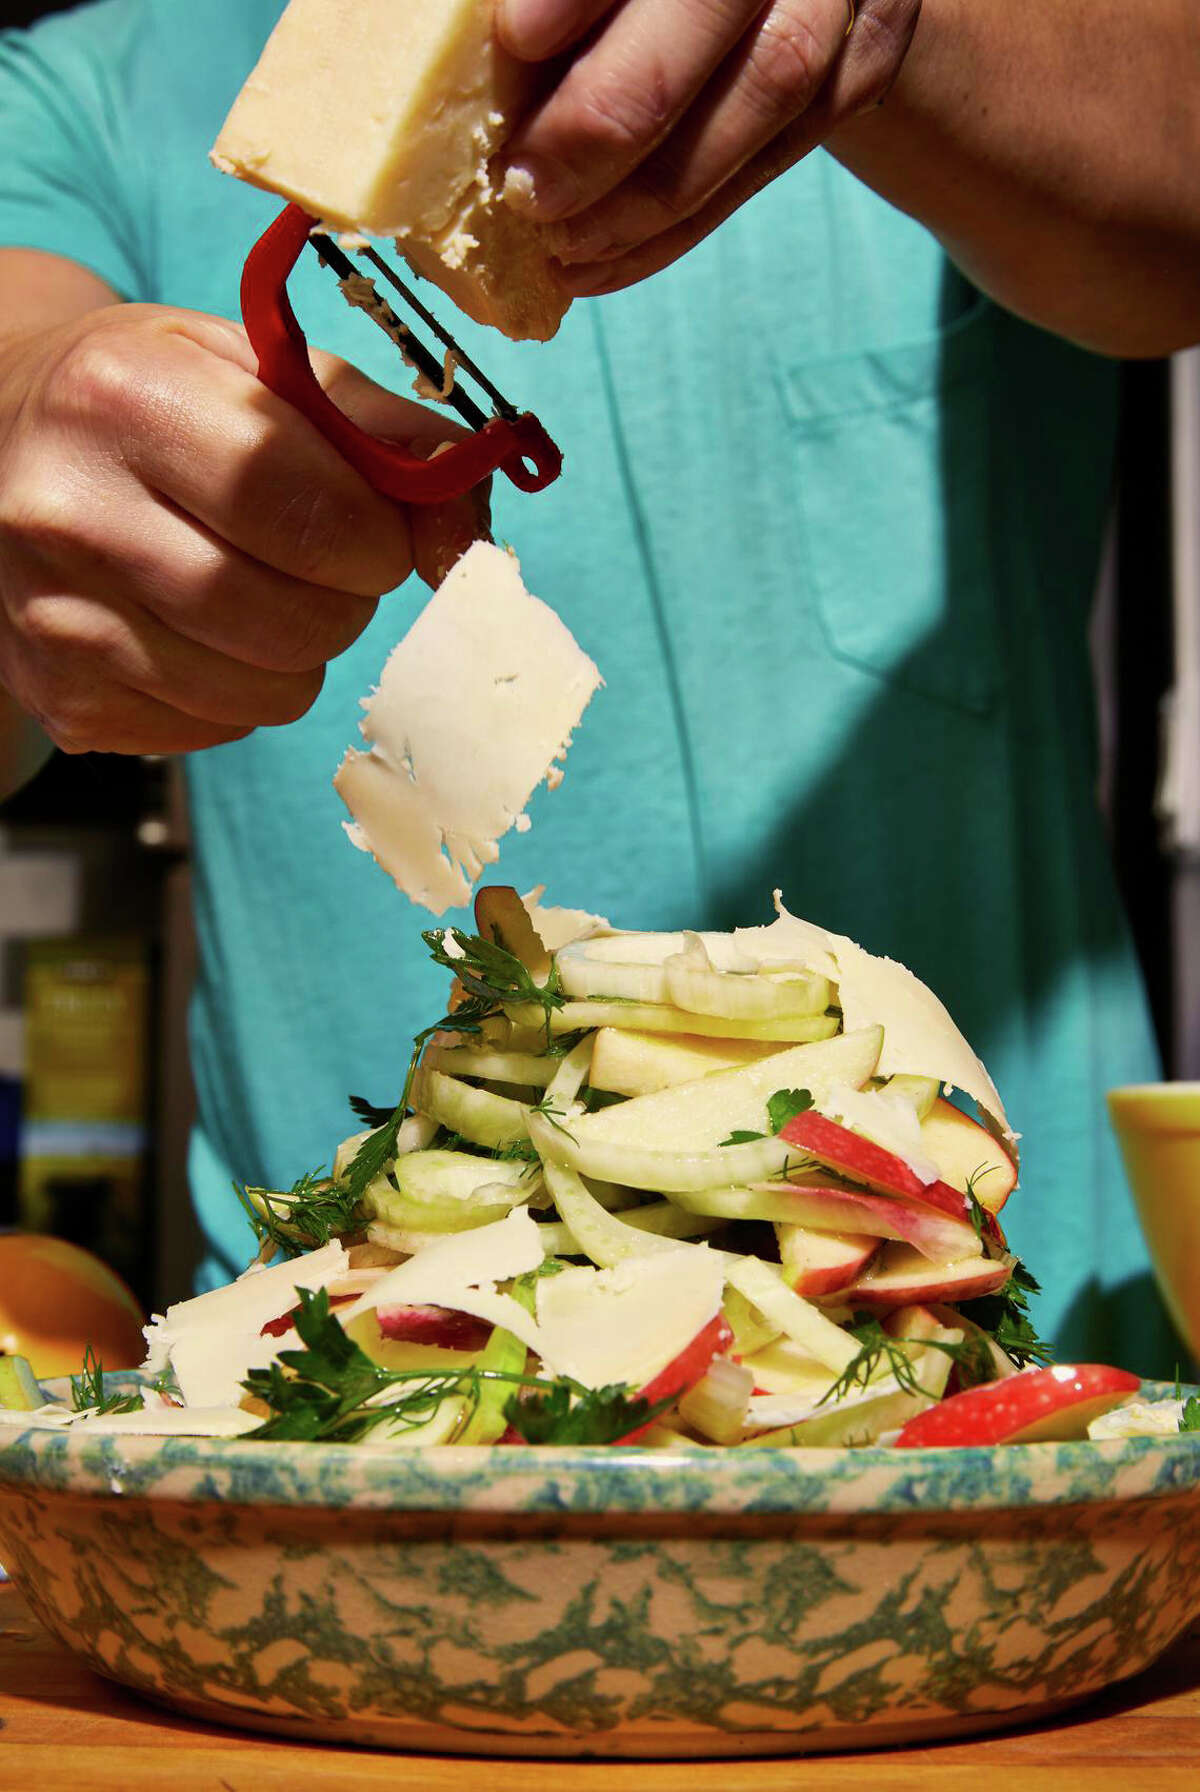 Chef Christian Reynoso shaves white cheddar on a Fennel, Apple and Cheddar Salad.